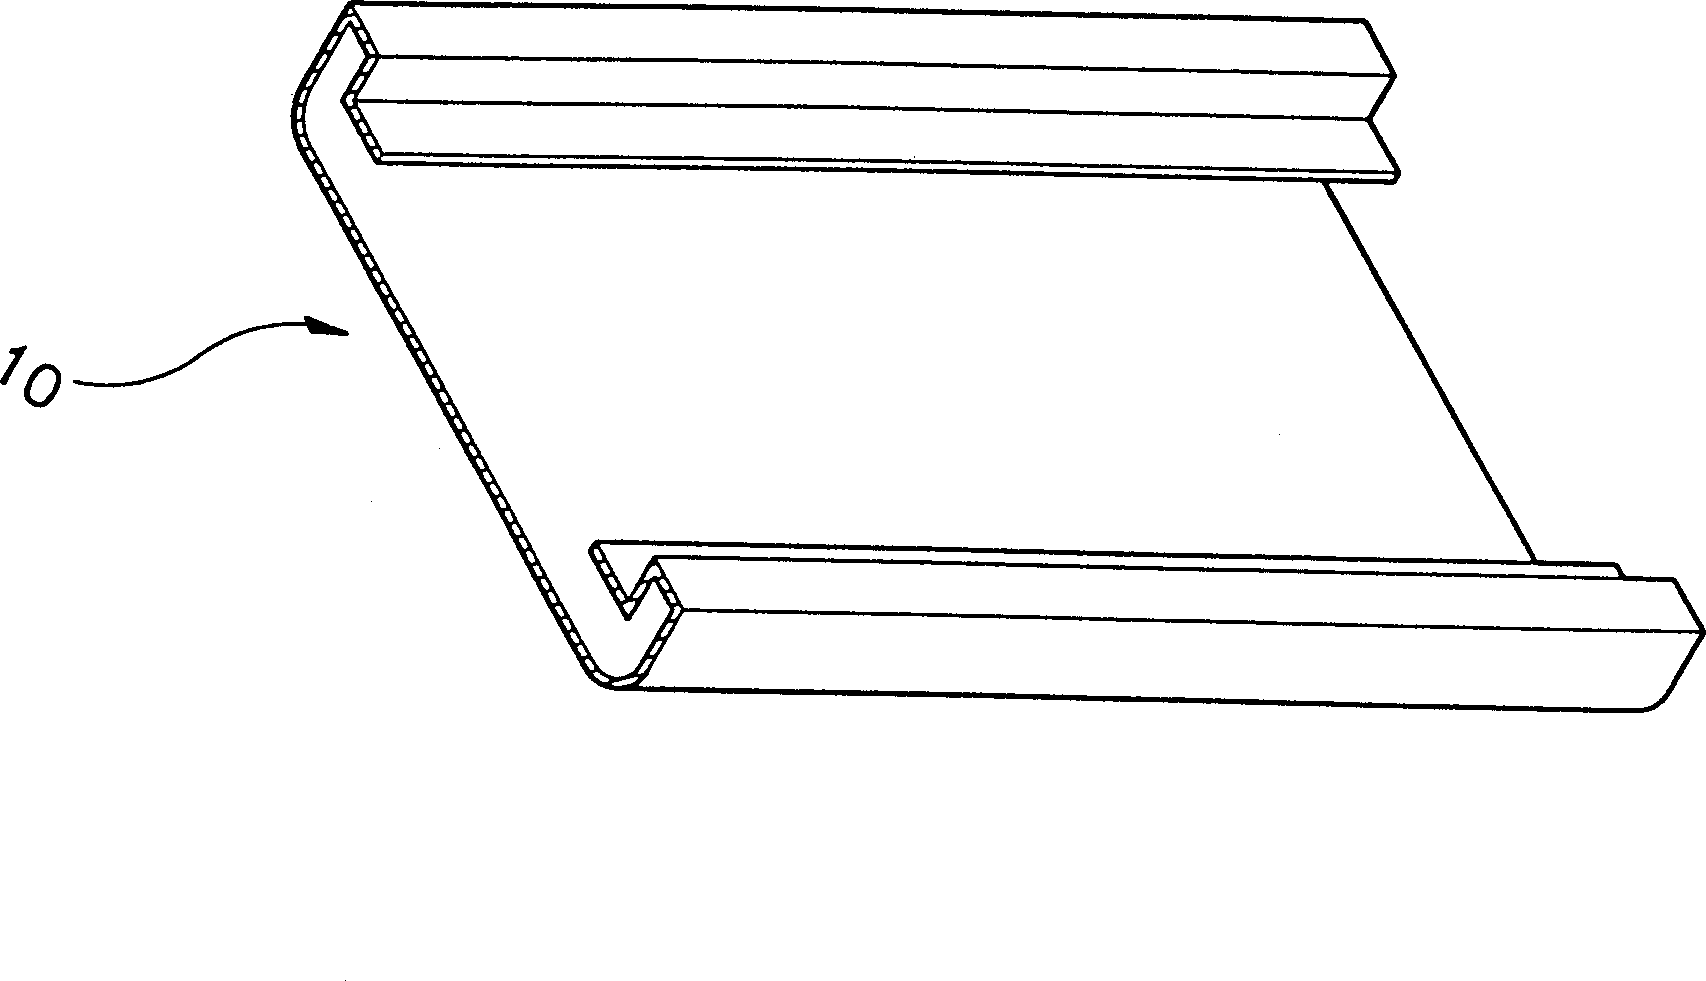 Steel-board bending device for refrigerator door